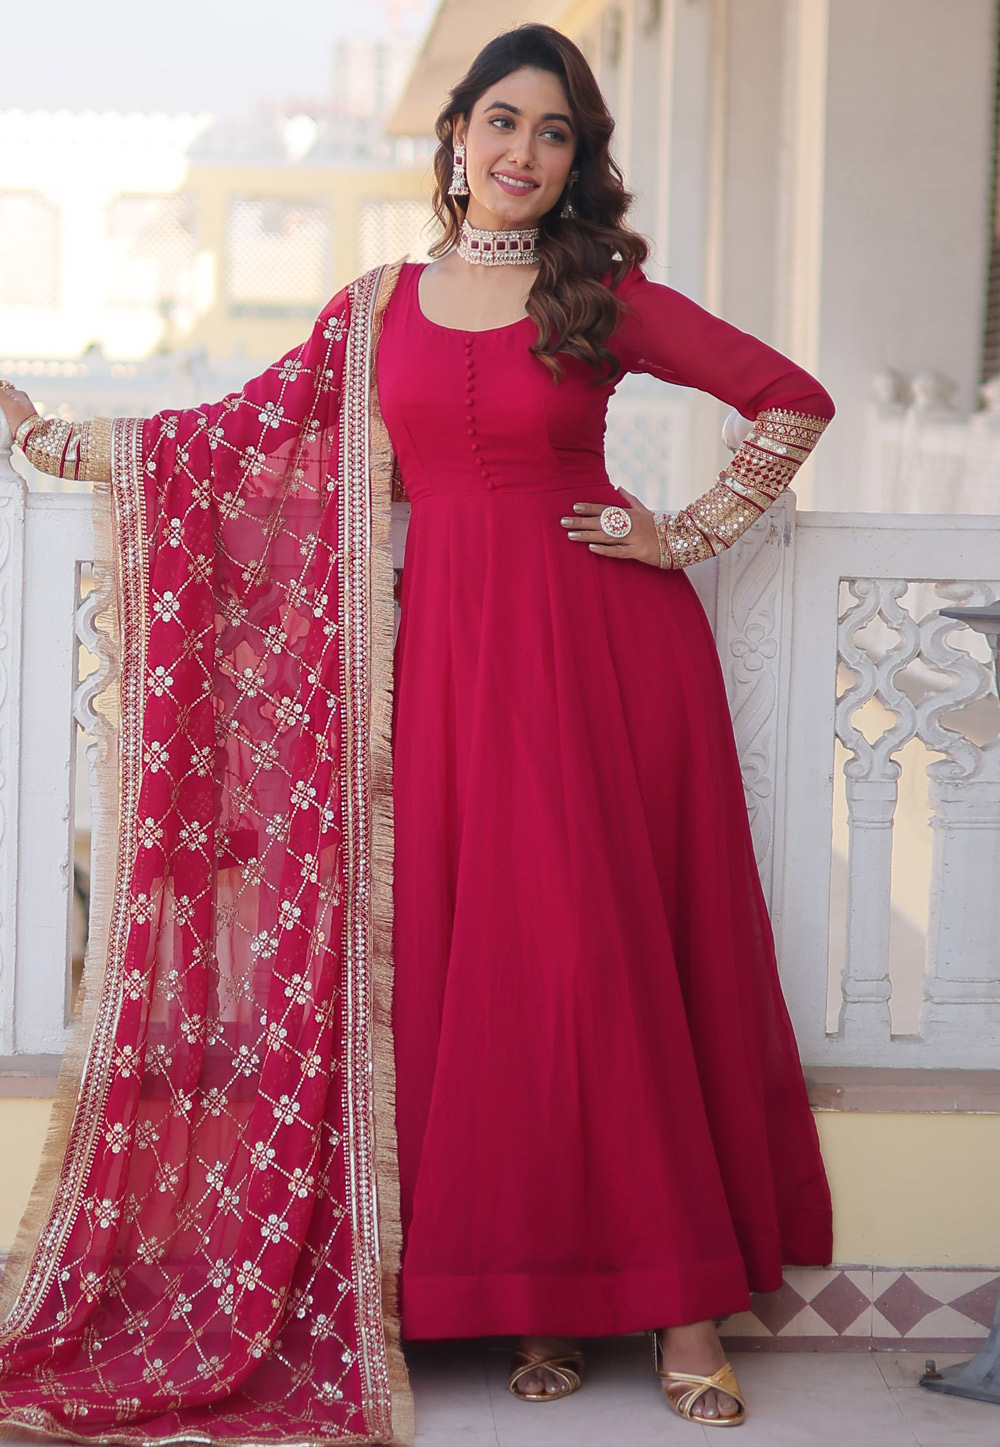 Diwali Anarkali Suits: Buy Anarkali Suits for Diwali Online at